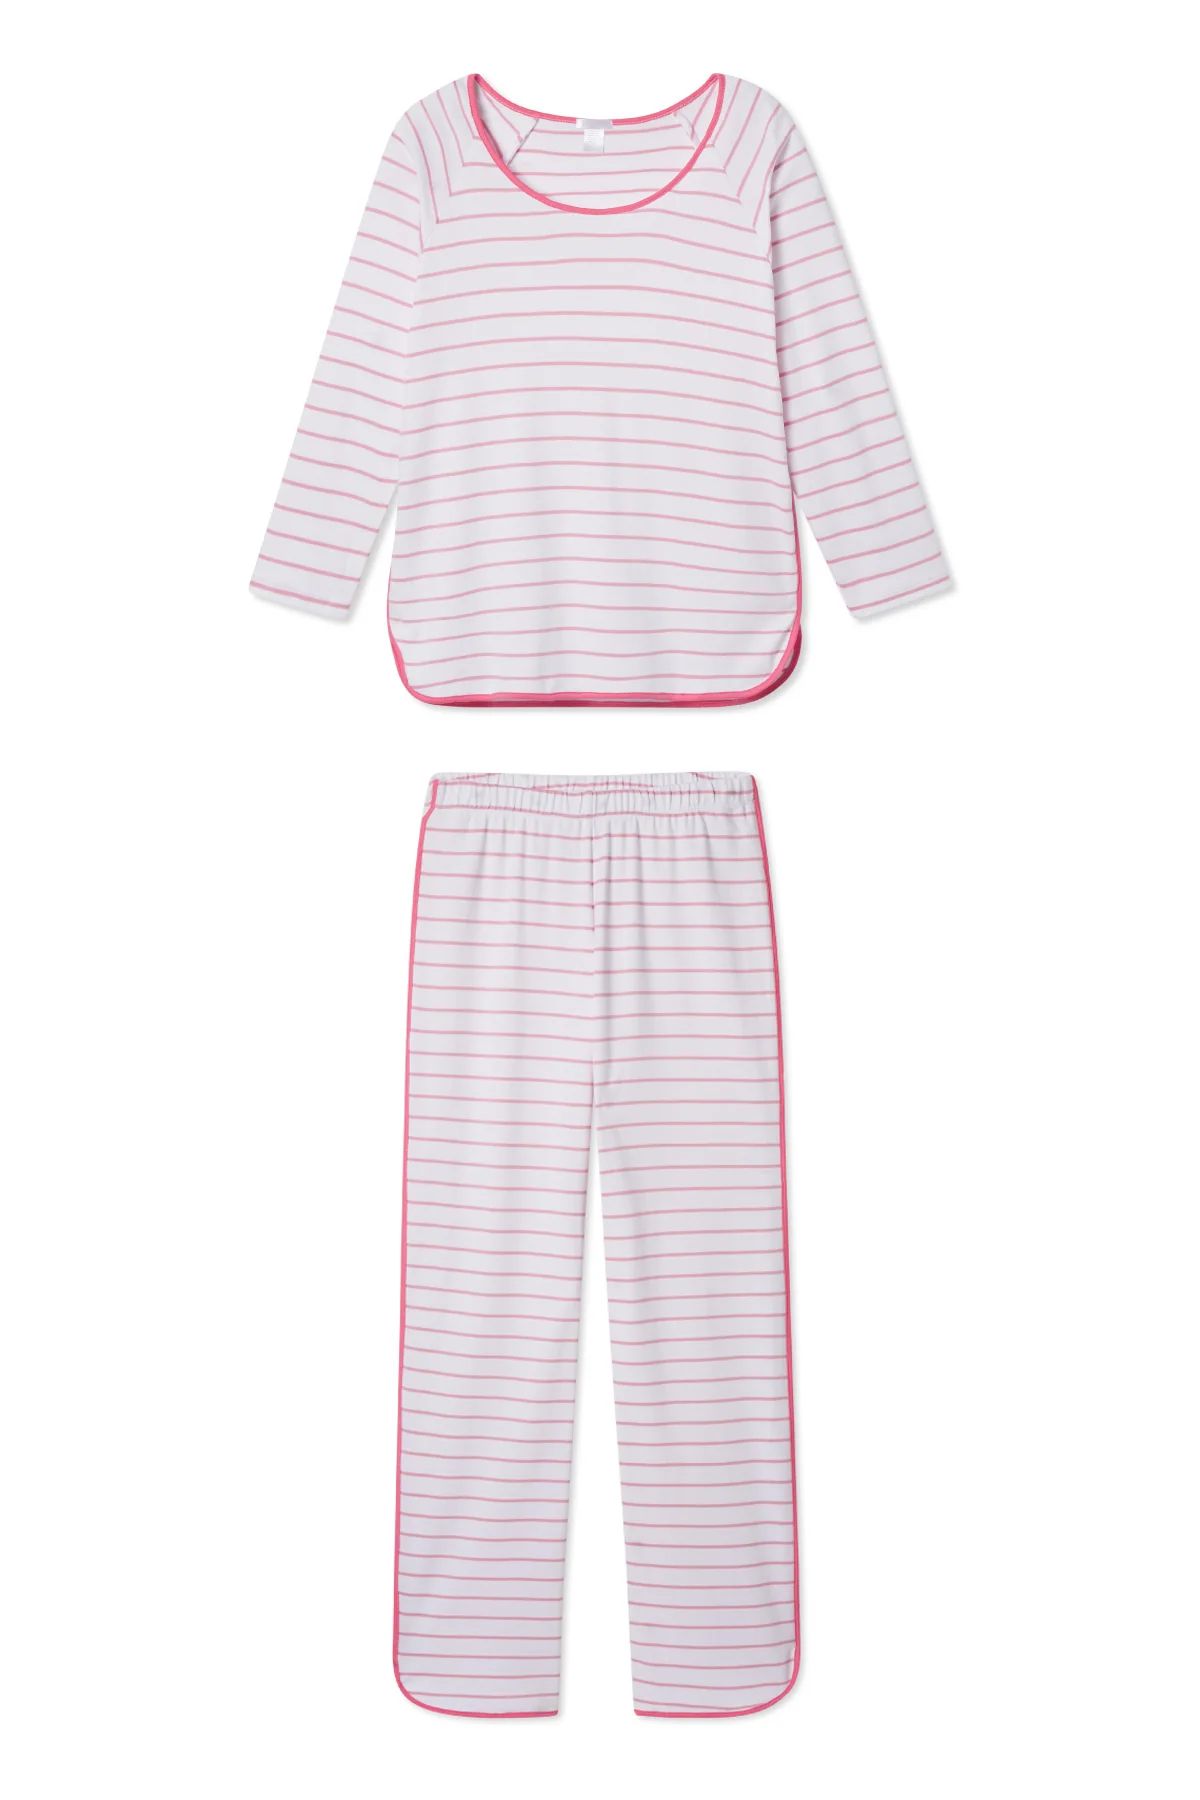 Pima Long-Long Set in Rose | LAKE Pajamas